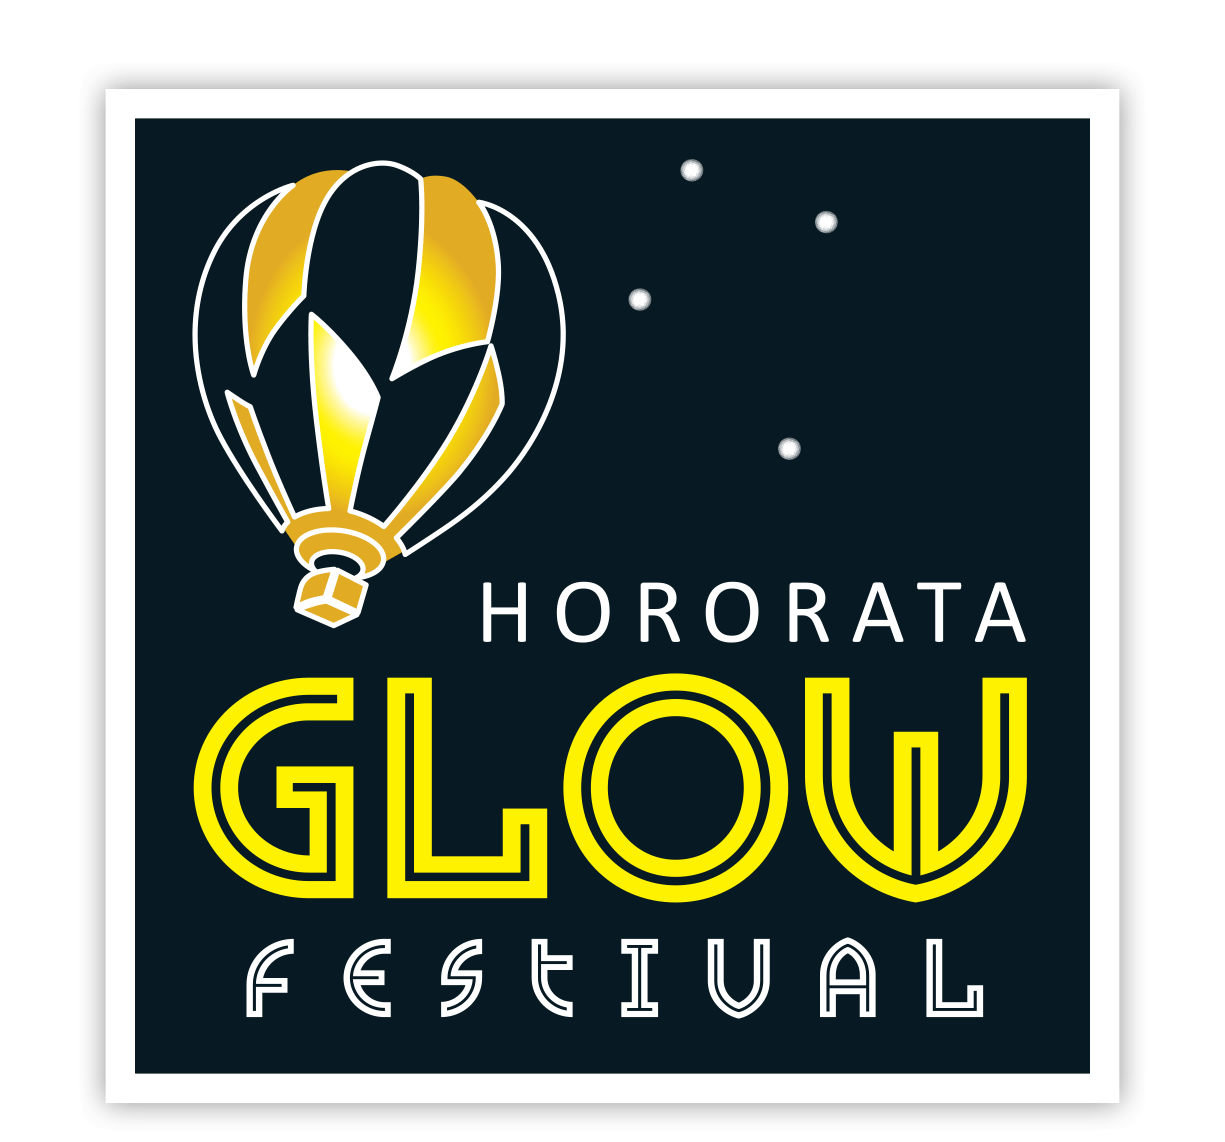 Hororata_Glow_Festival_Logo